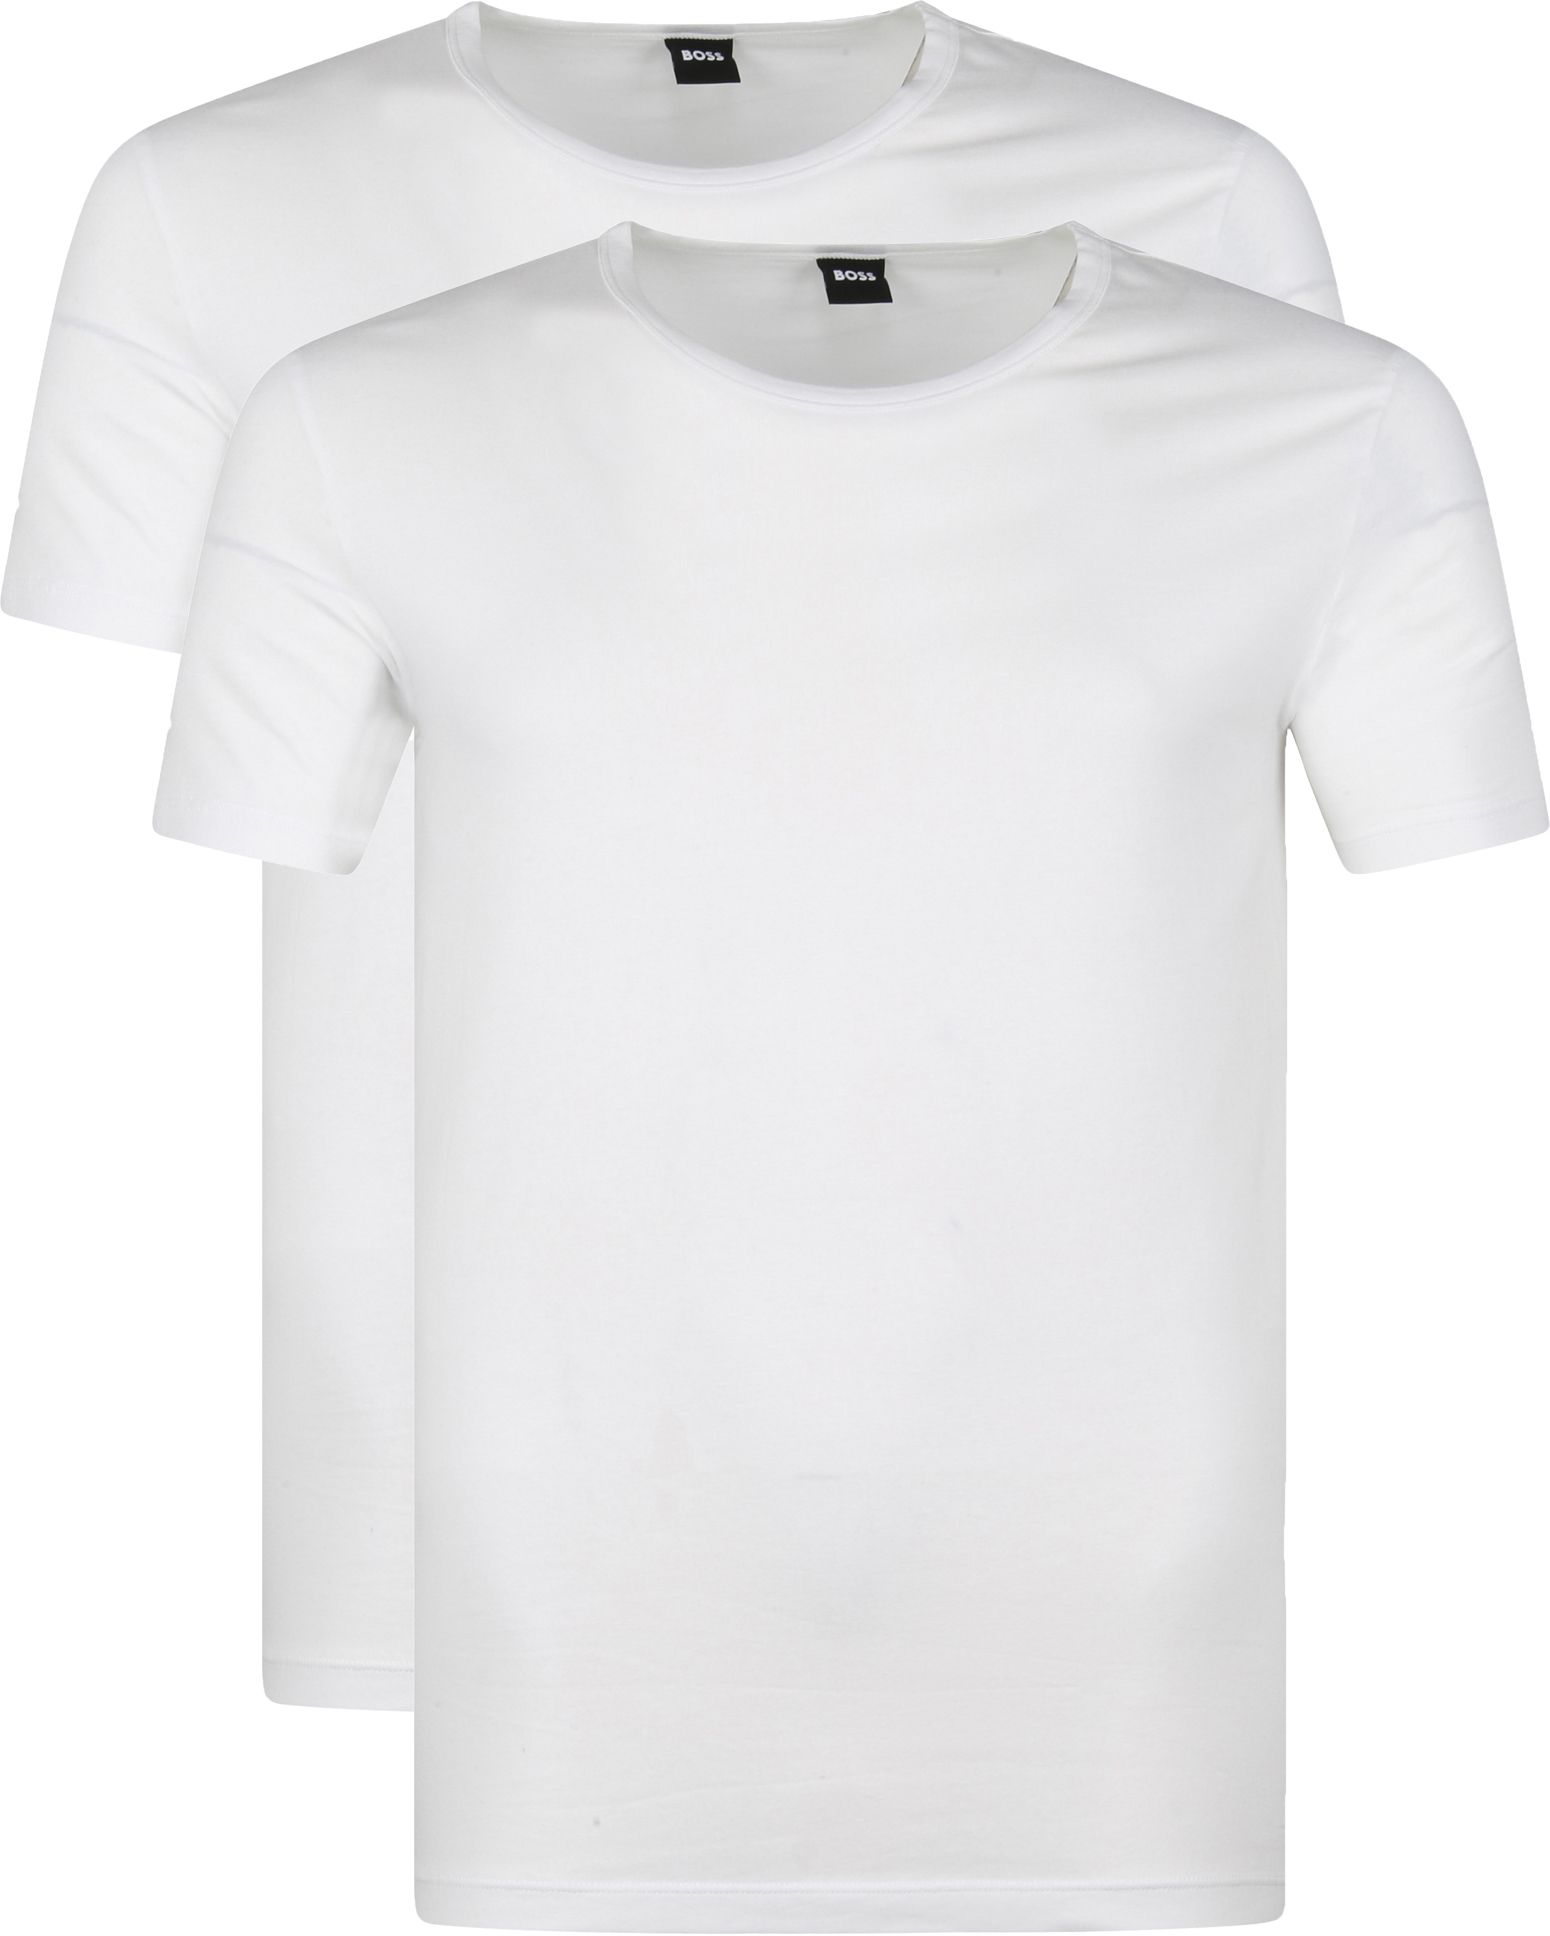 Hugo Boss T Shirt Modern 2-Pack White size M